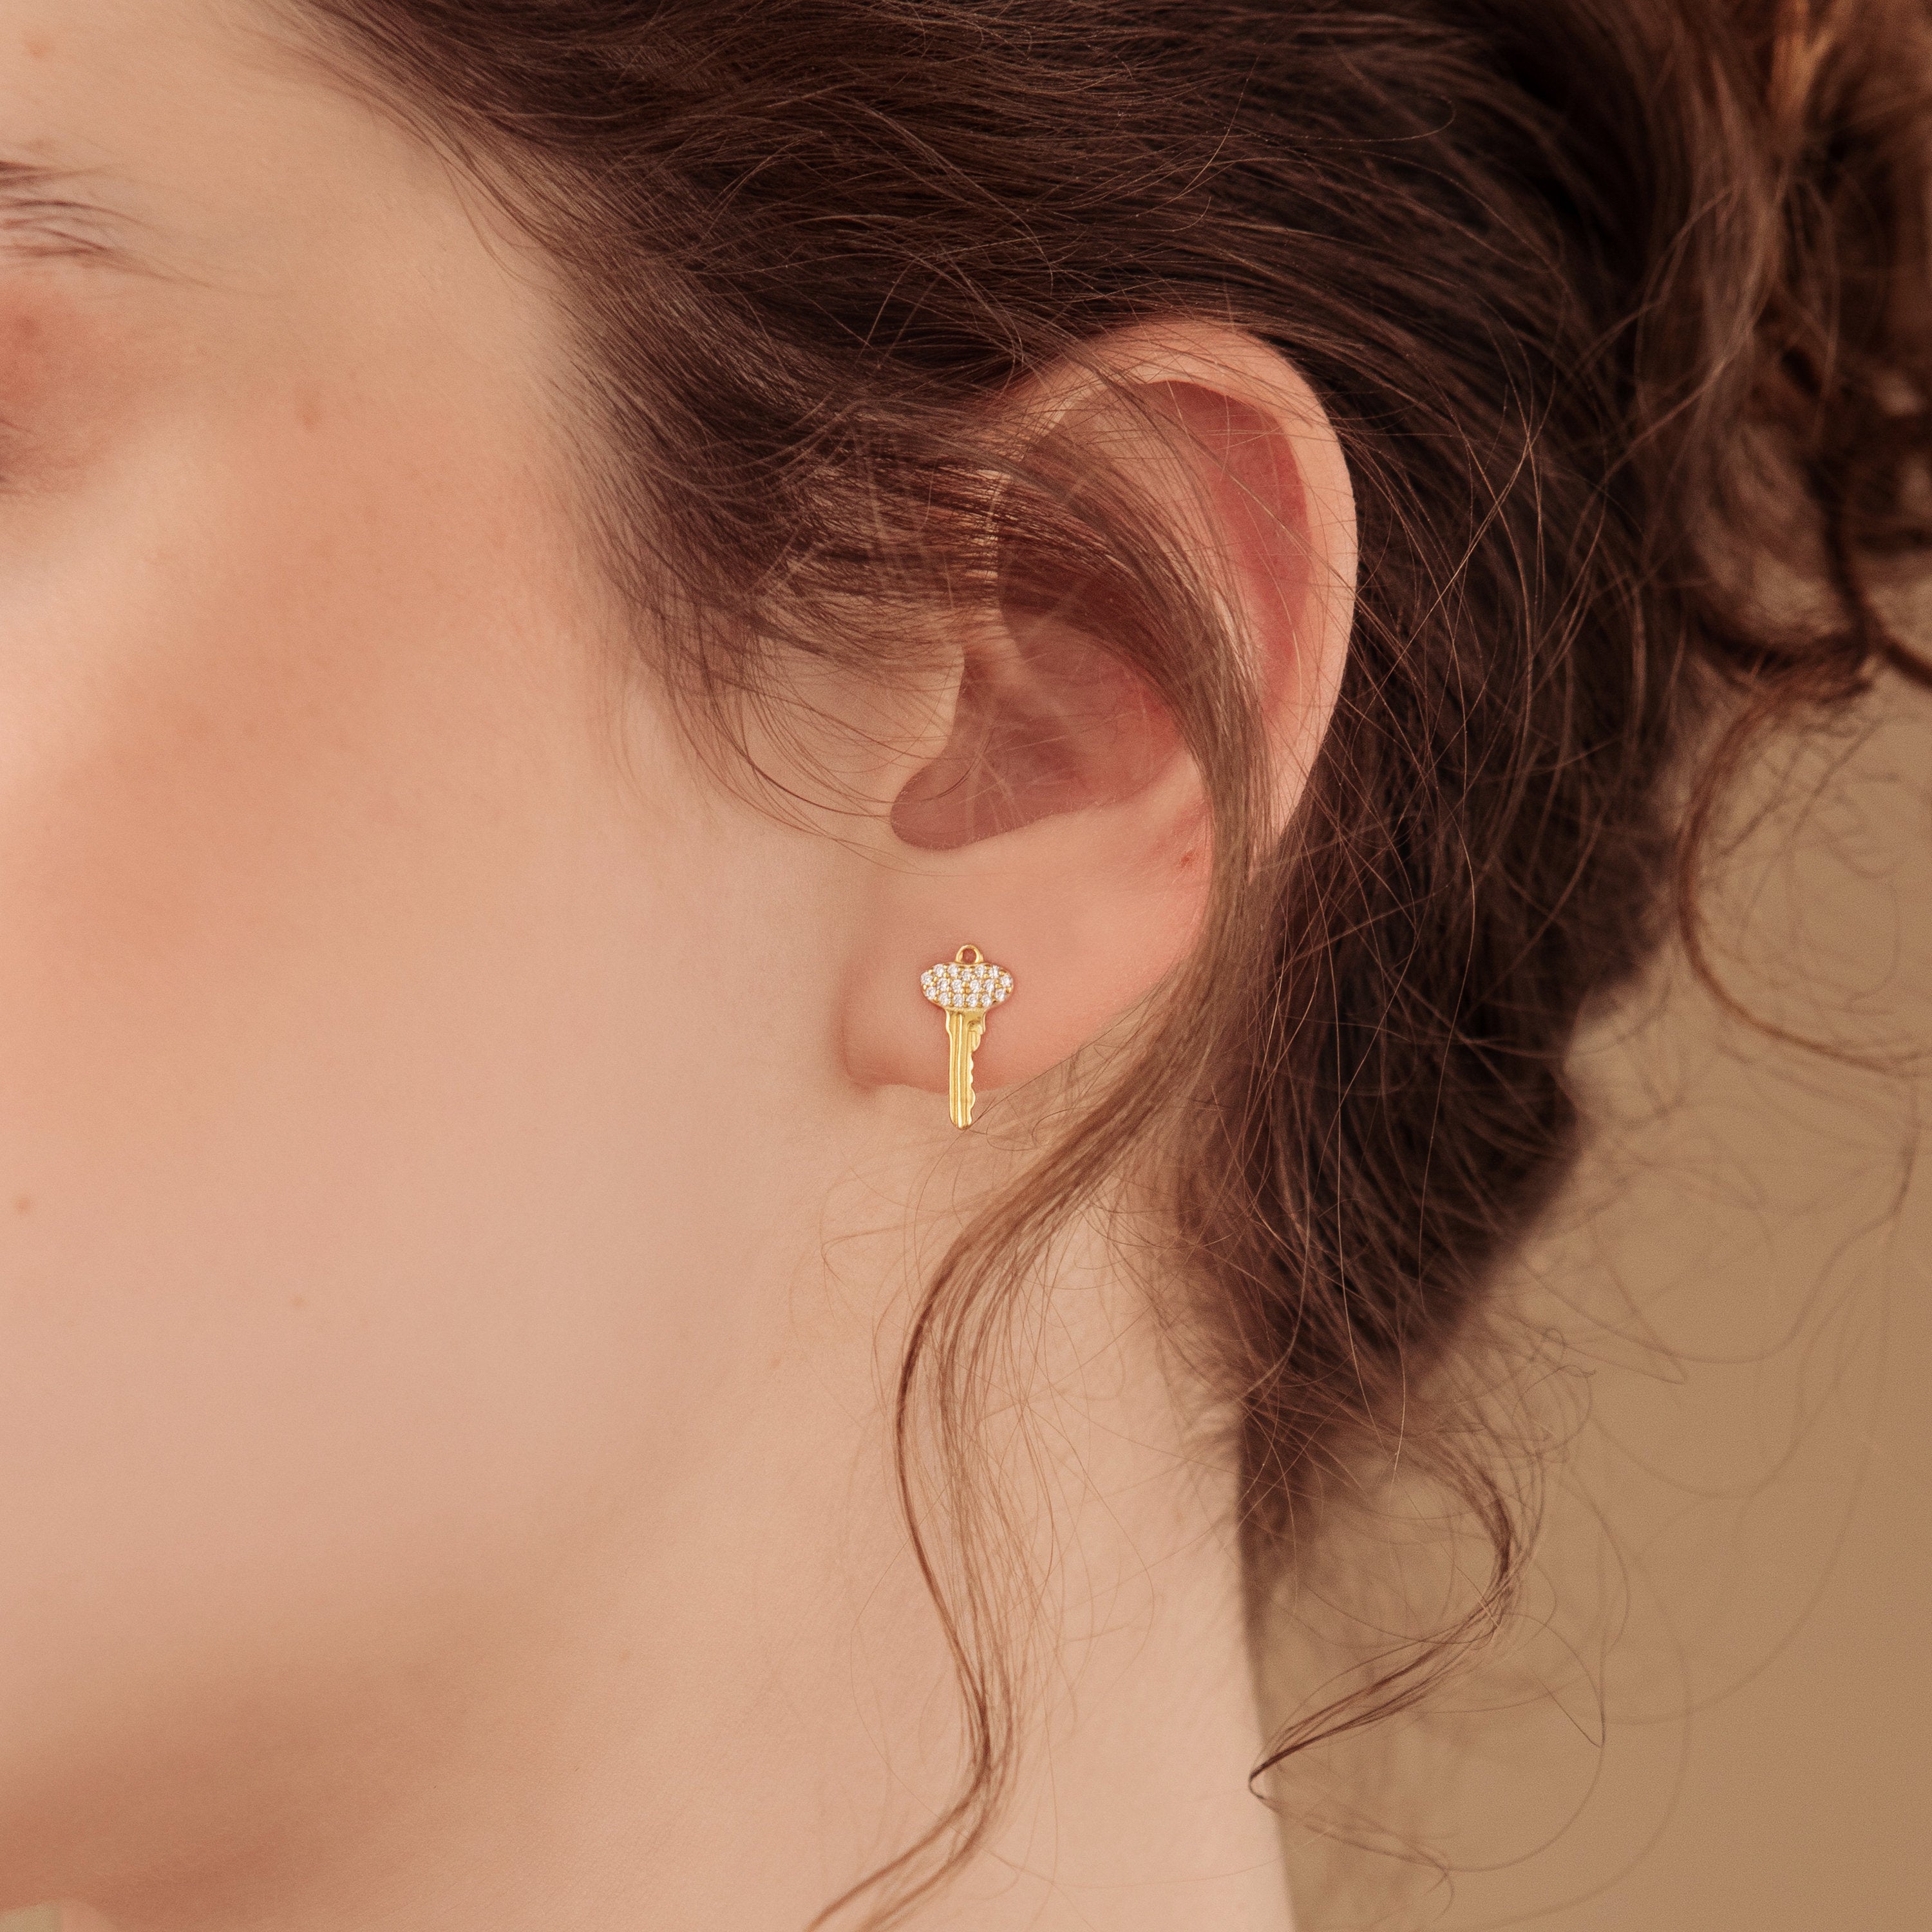 13 Minimalist Earrings Every Girl Will Love - FabFitFun